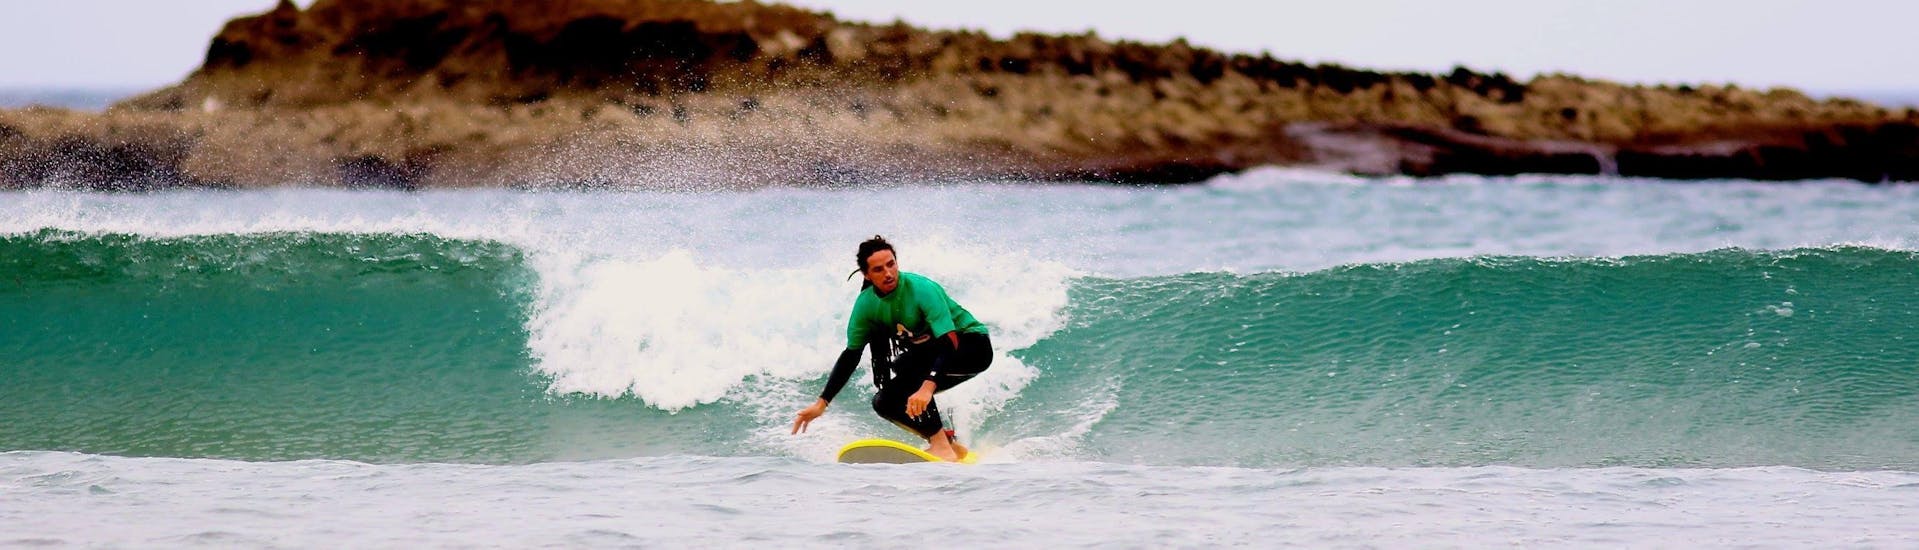 Surfkurs in Carrapateira (ab 6 J.) für Fortgeschrittene.